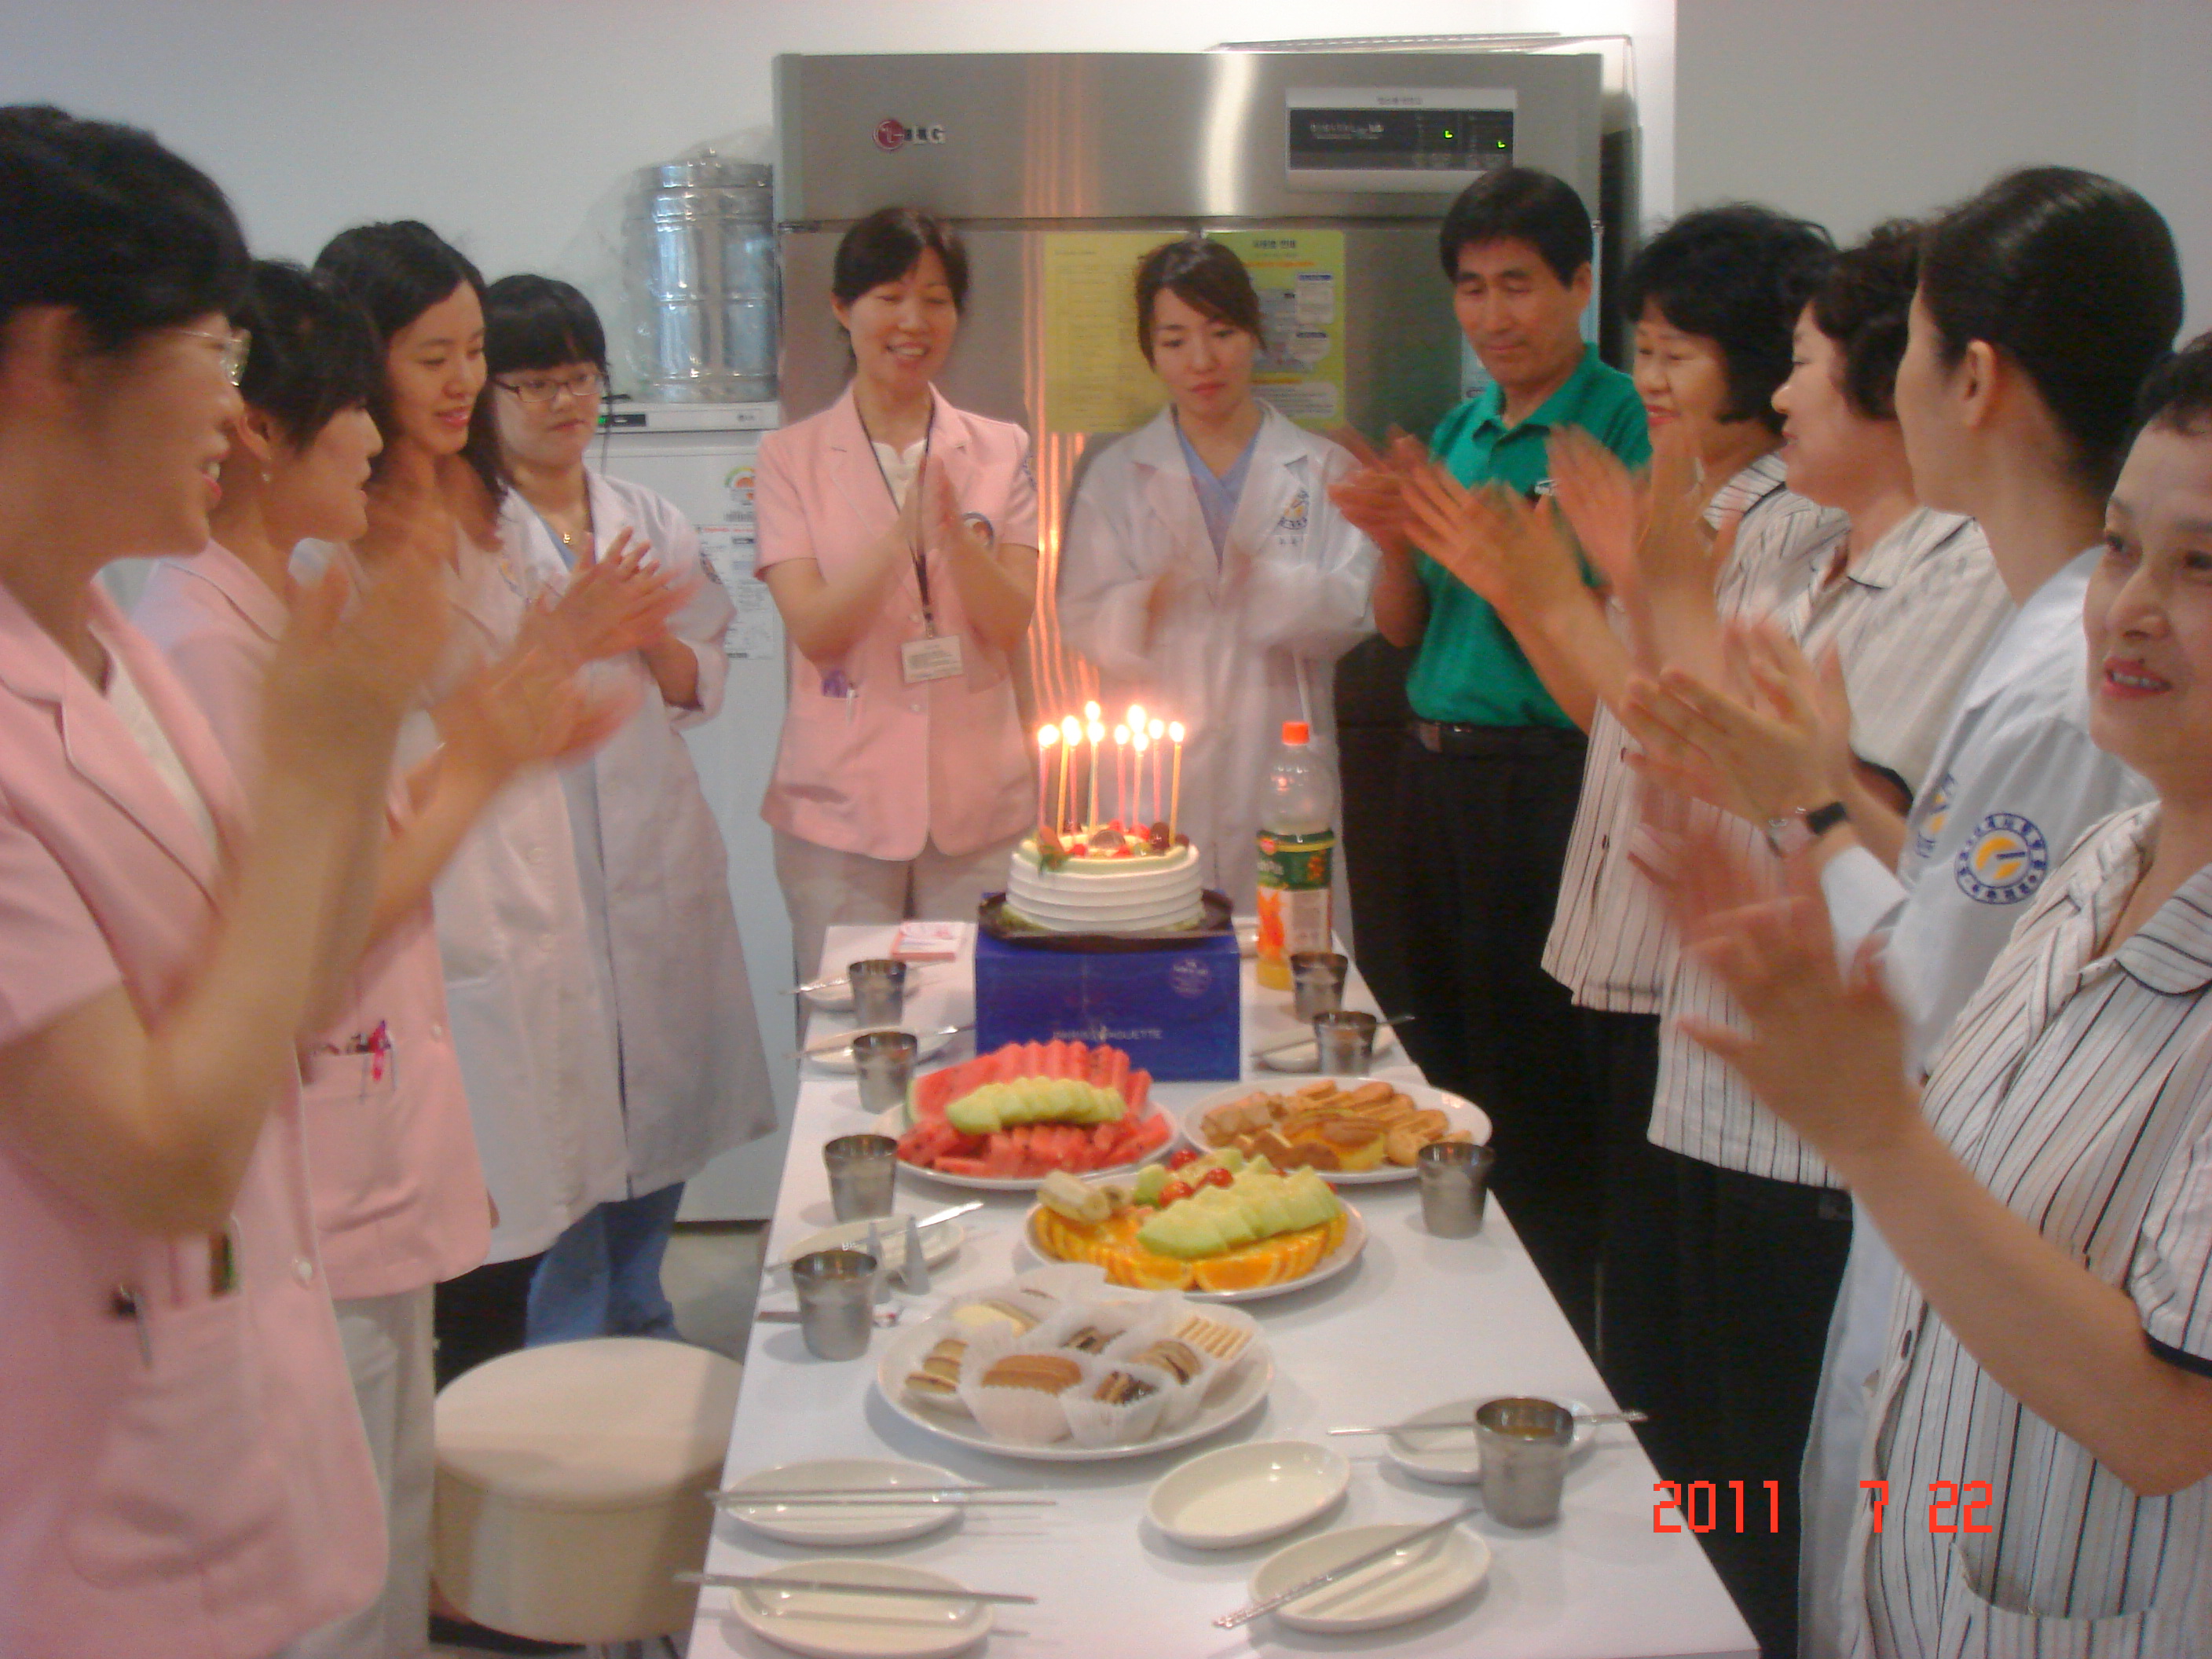 2011년 7월 22일 - 강북점 생일자 파티 게시글의 1번째 첨부파일입니다.